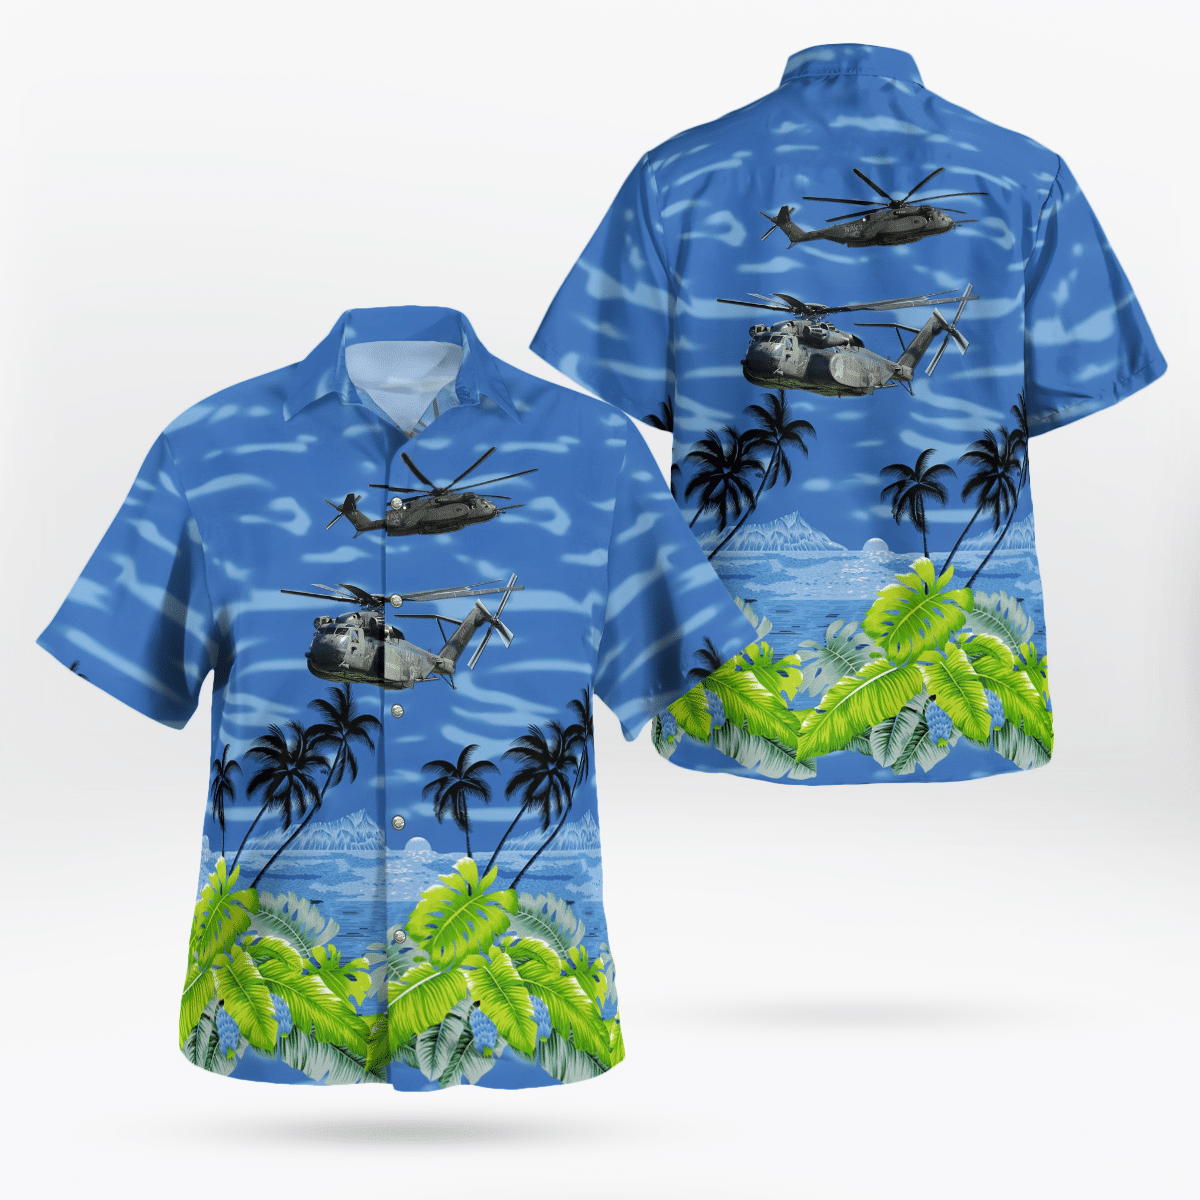 Best Hawaiian shirts 2022 90